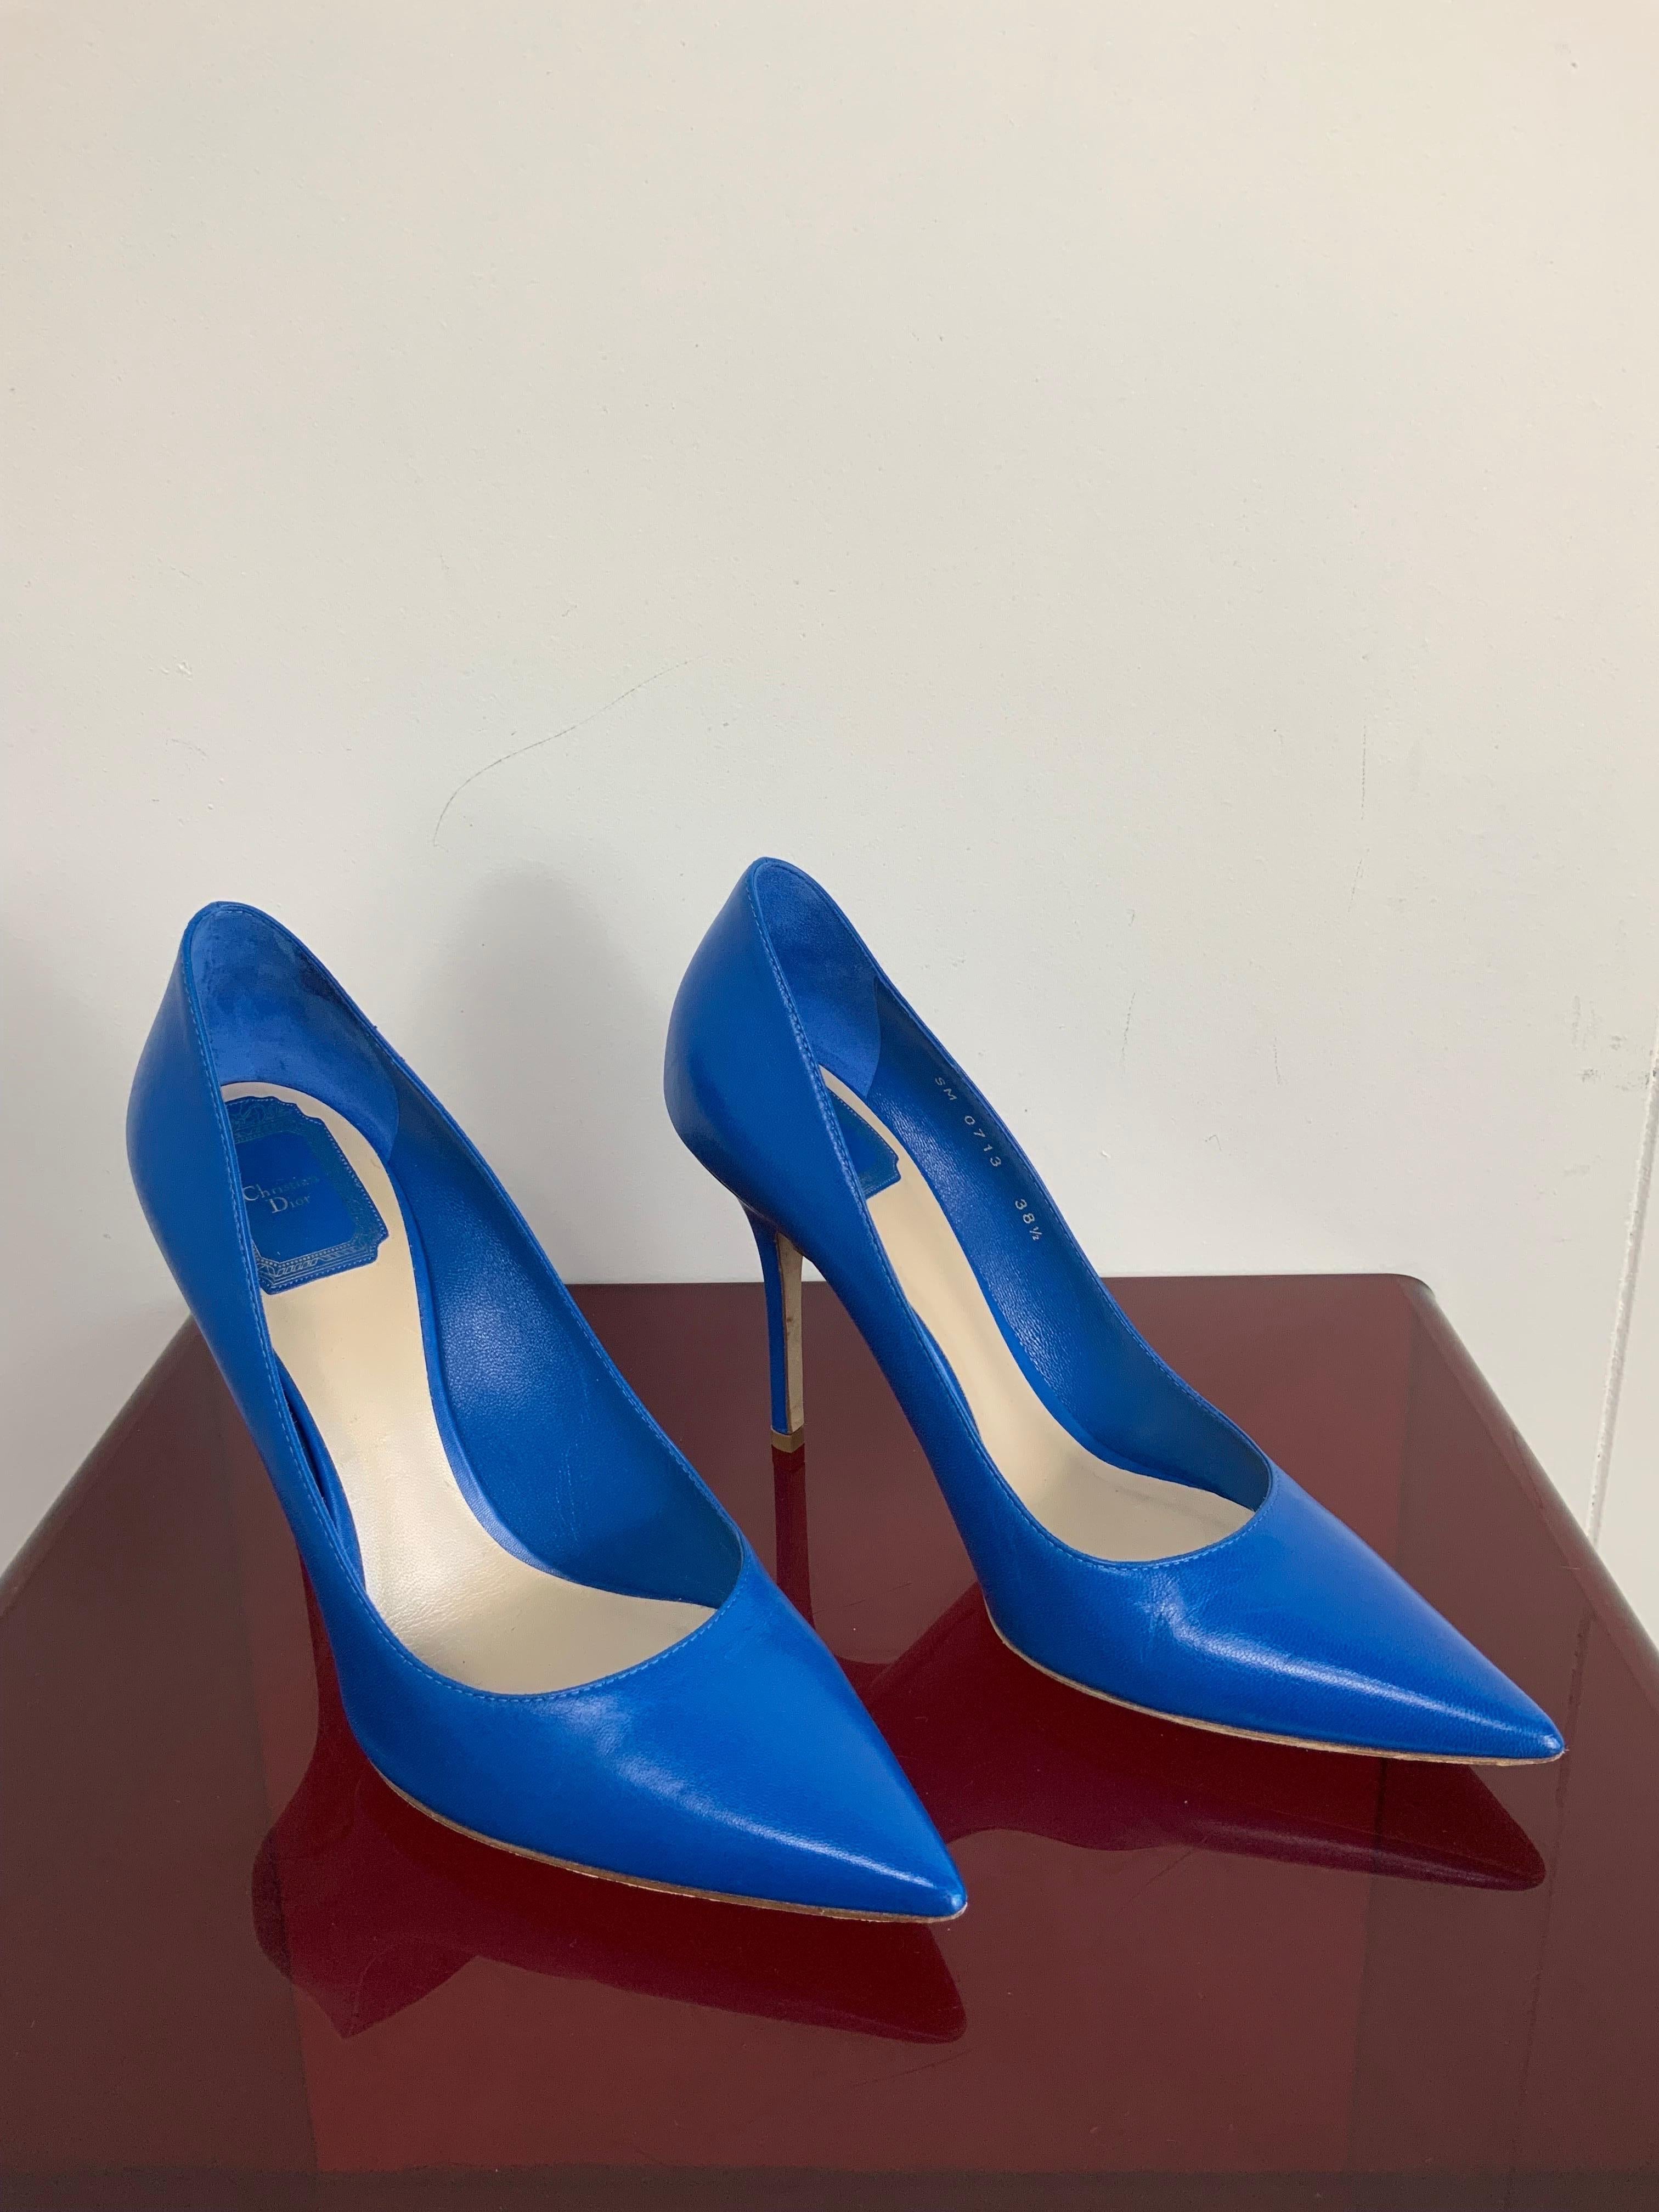 blu dior shoes